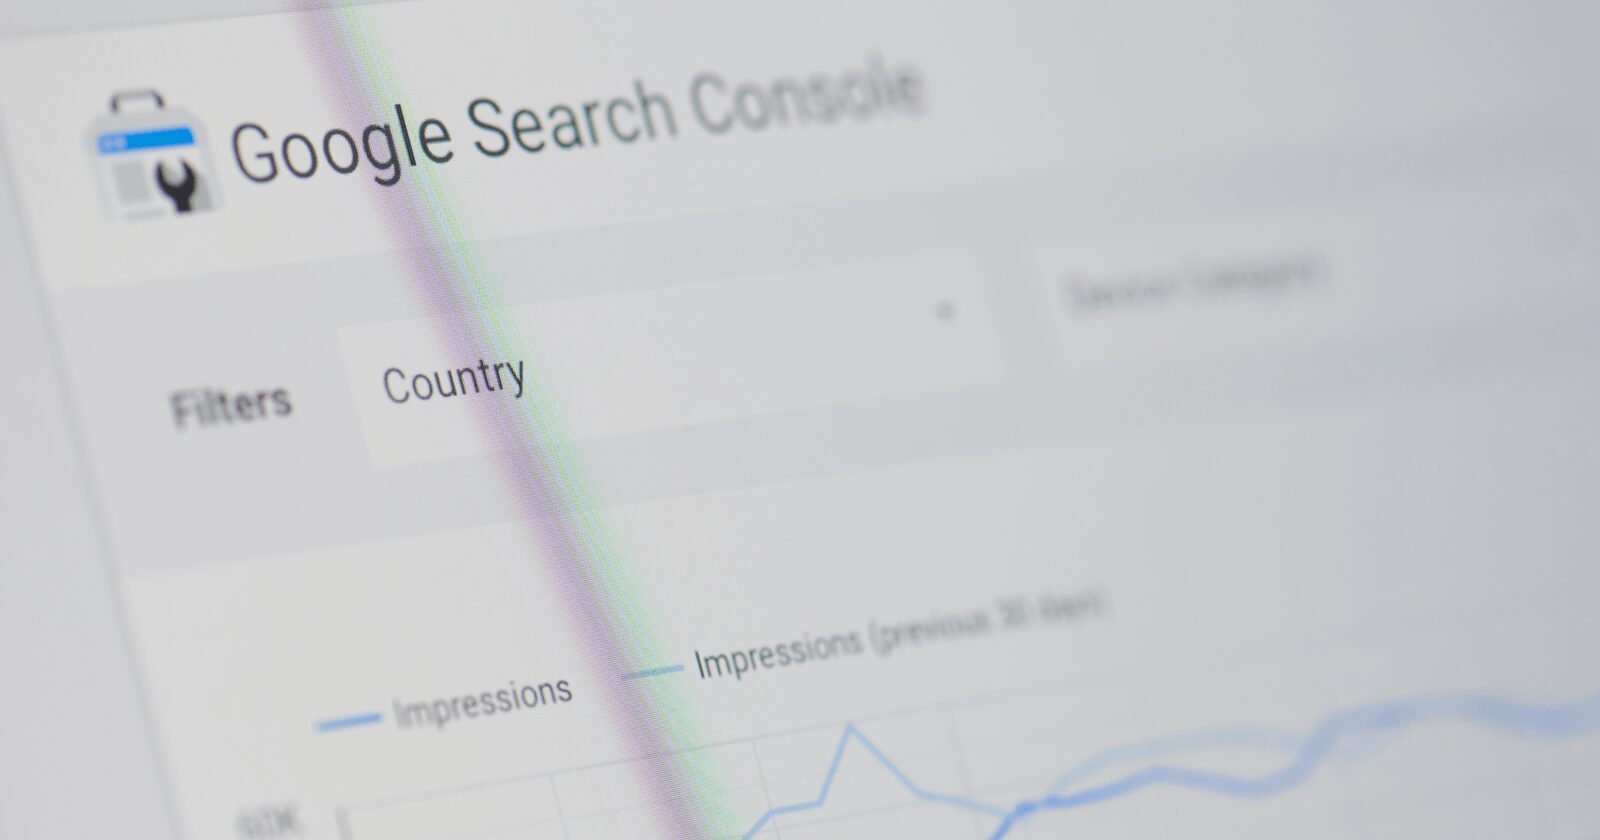 Les outils de test de la console de recherche Google bénéficient de deux nouvelles fonctionnalités